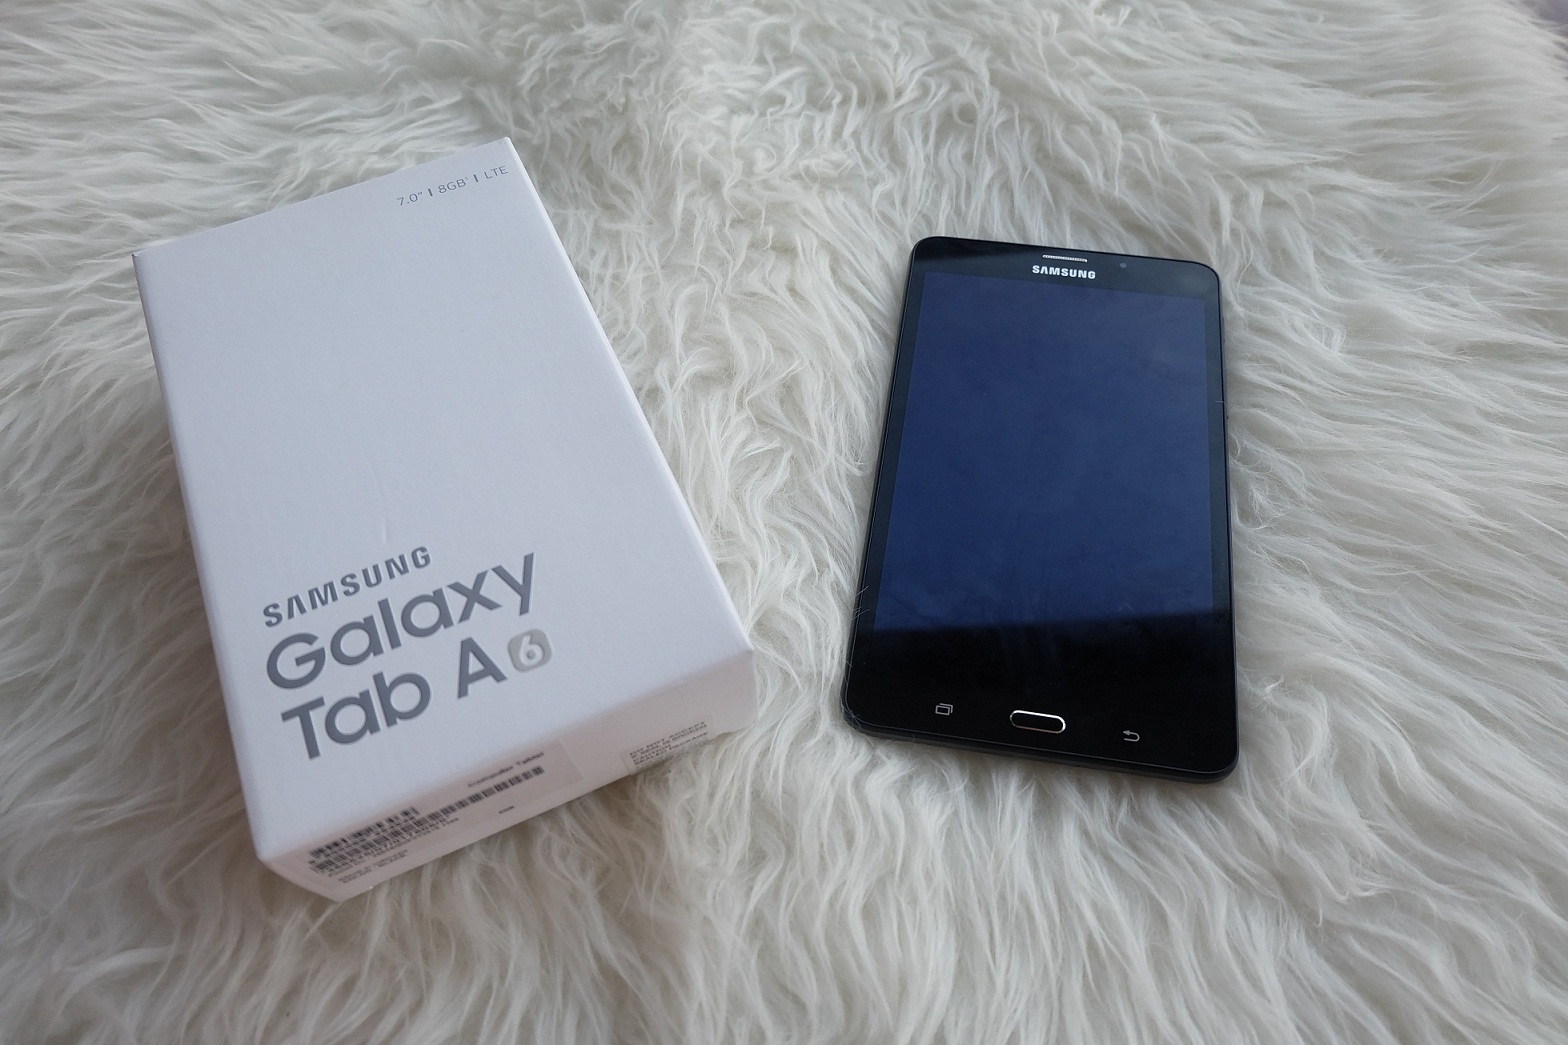 Samsung Galaxy A6 Desain Menarik Dengan Fitur Gimmick